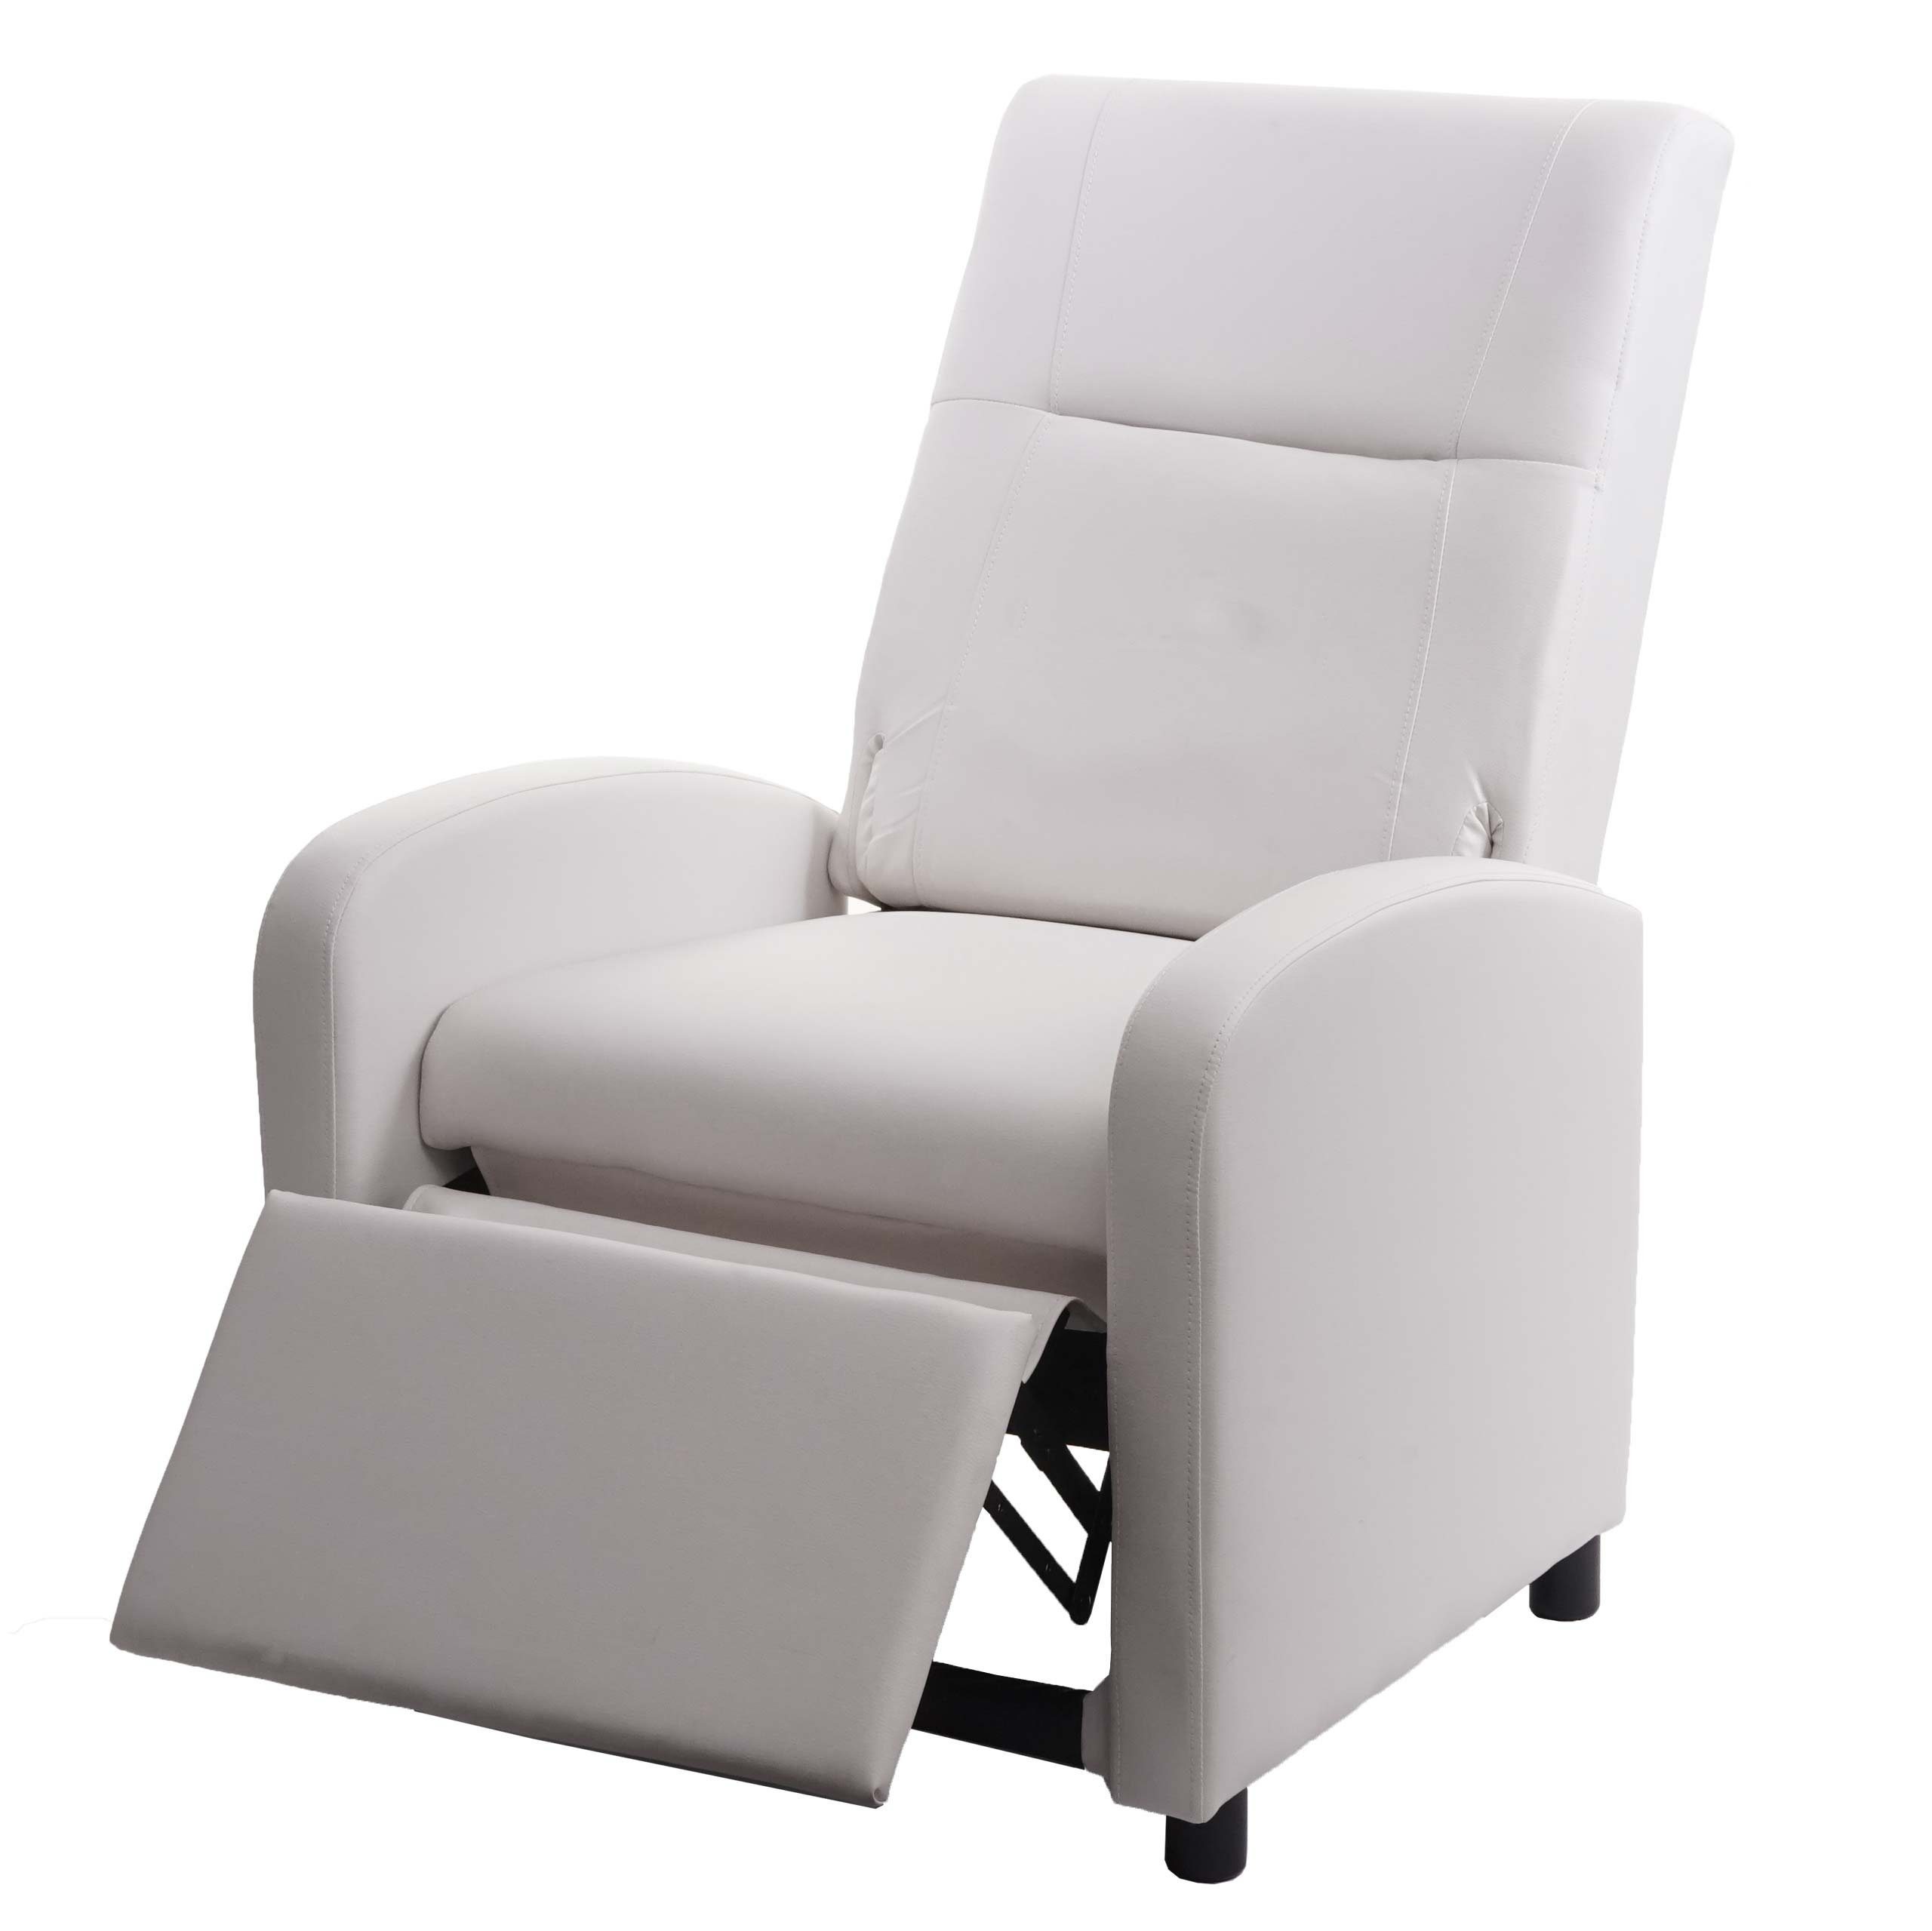 MCW TV-Sessel MCW-H18, Synchrone Verstellung der Rücken- und Fußlehne, Synchrone Verstellung der Rücken- und Fußlehne, Klappbare Rückenlehne weiß